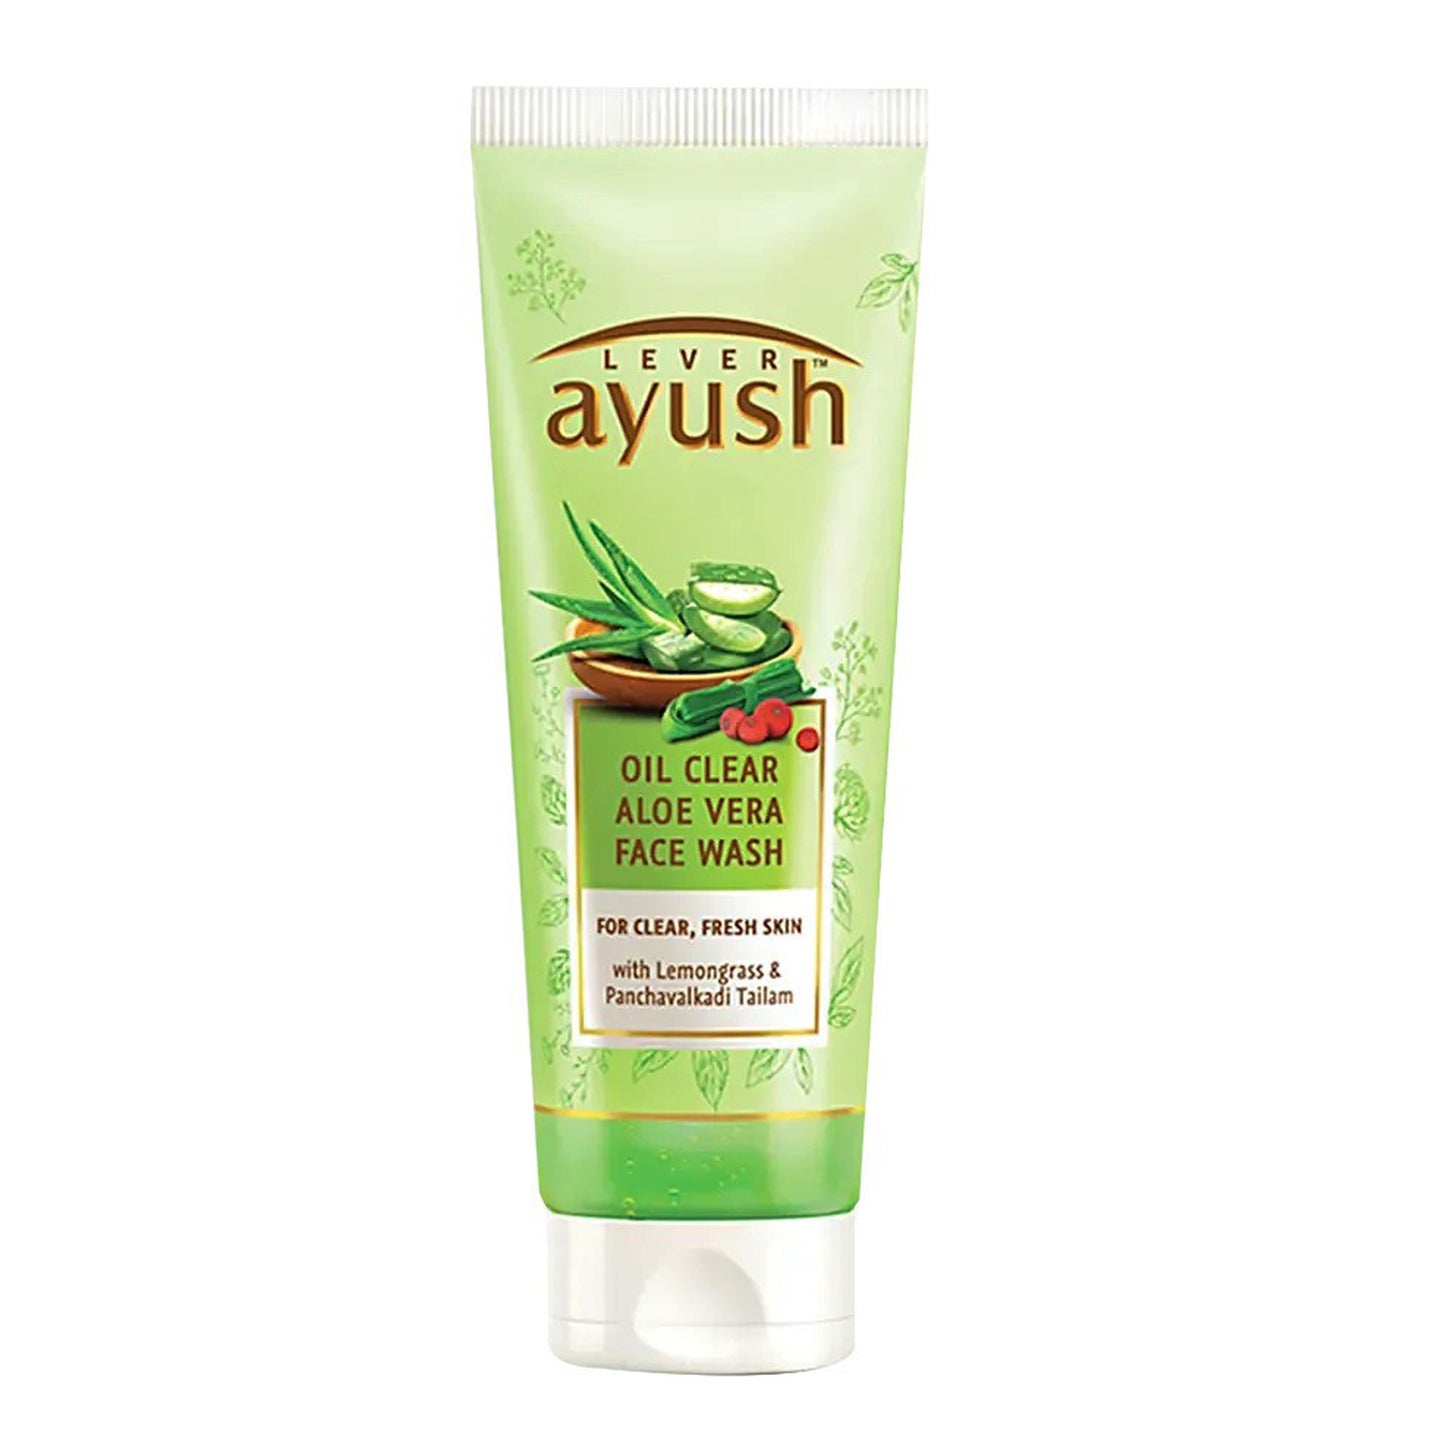 Ayush Natural Ayurvedic Oil Clear Aloe Vera Face Wash (80g)